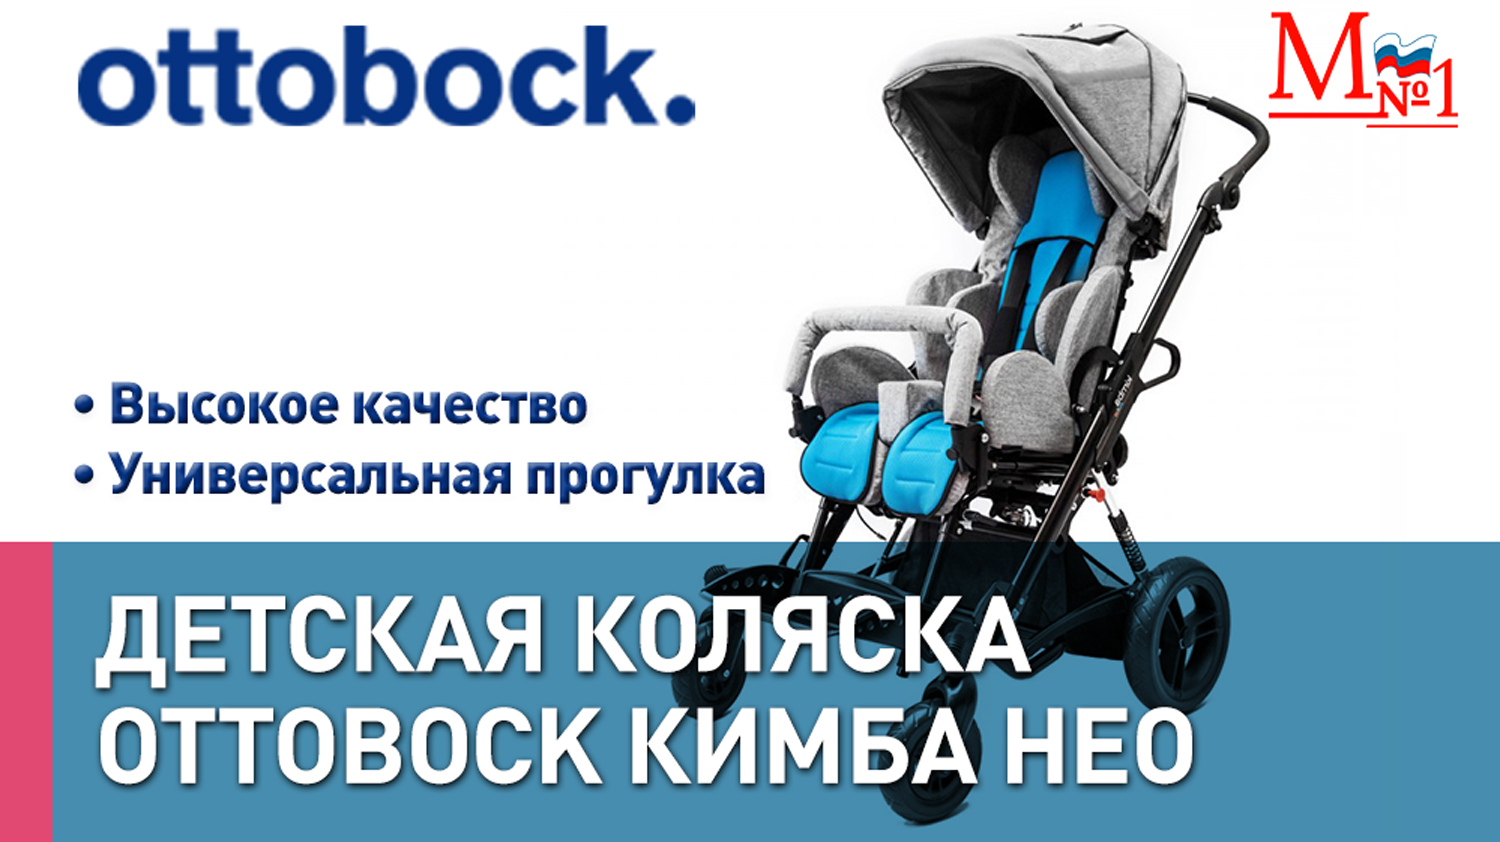 Прогулочная инвалидная коляска для детей с ДЦП Ottobock Кимба Нео